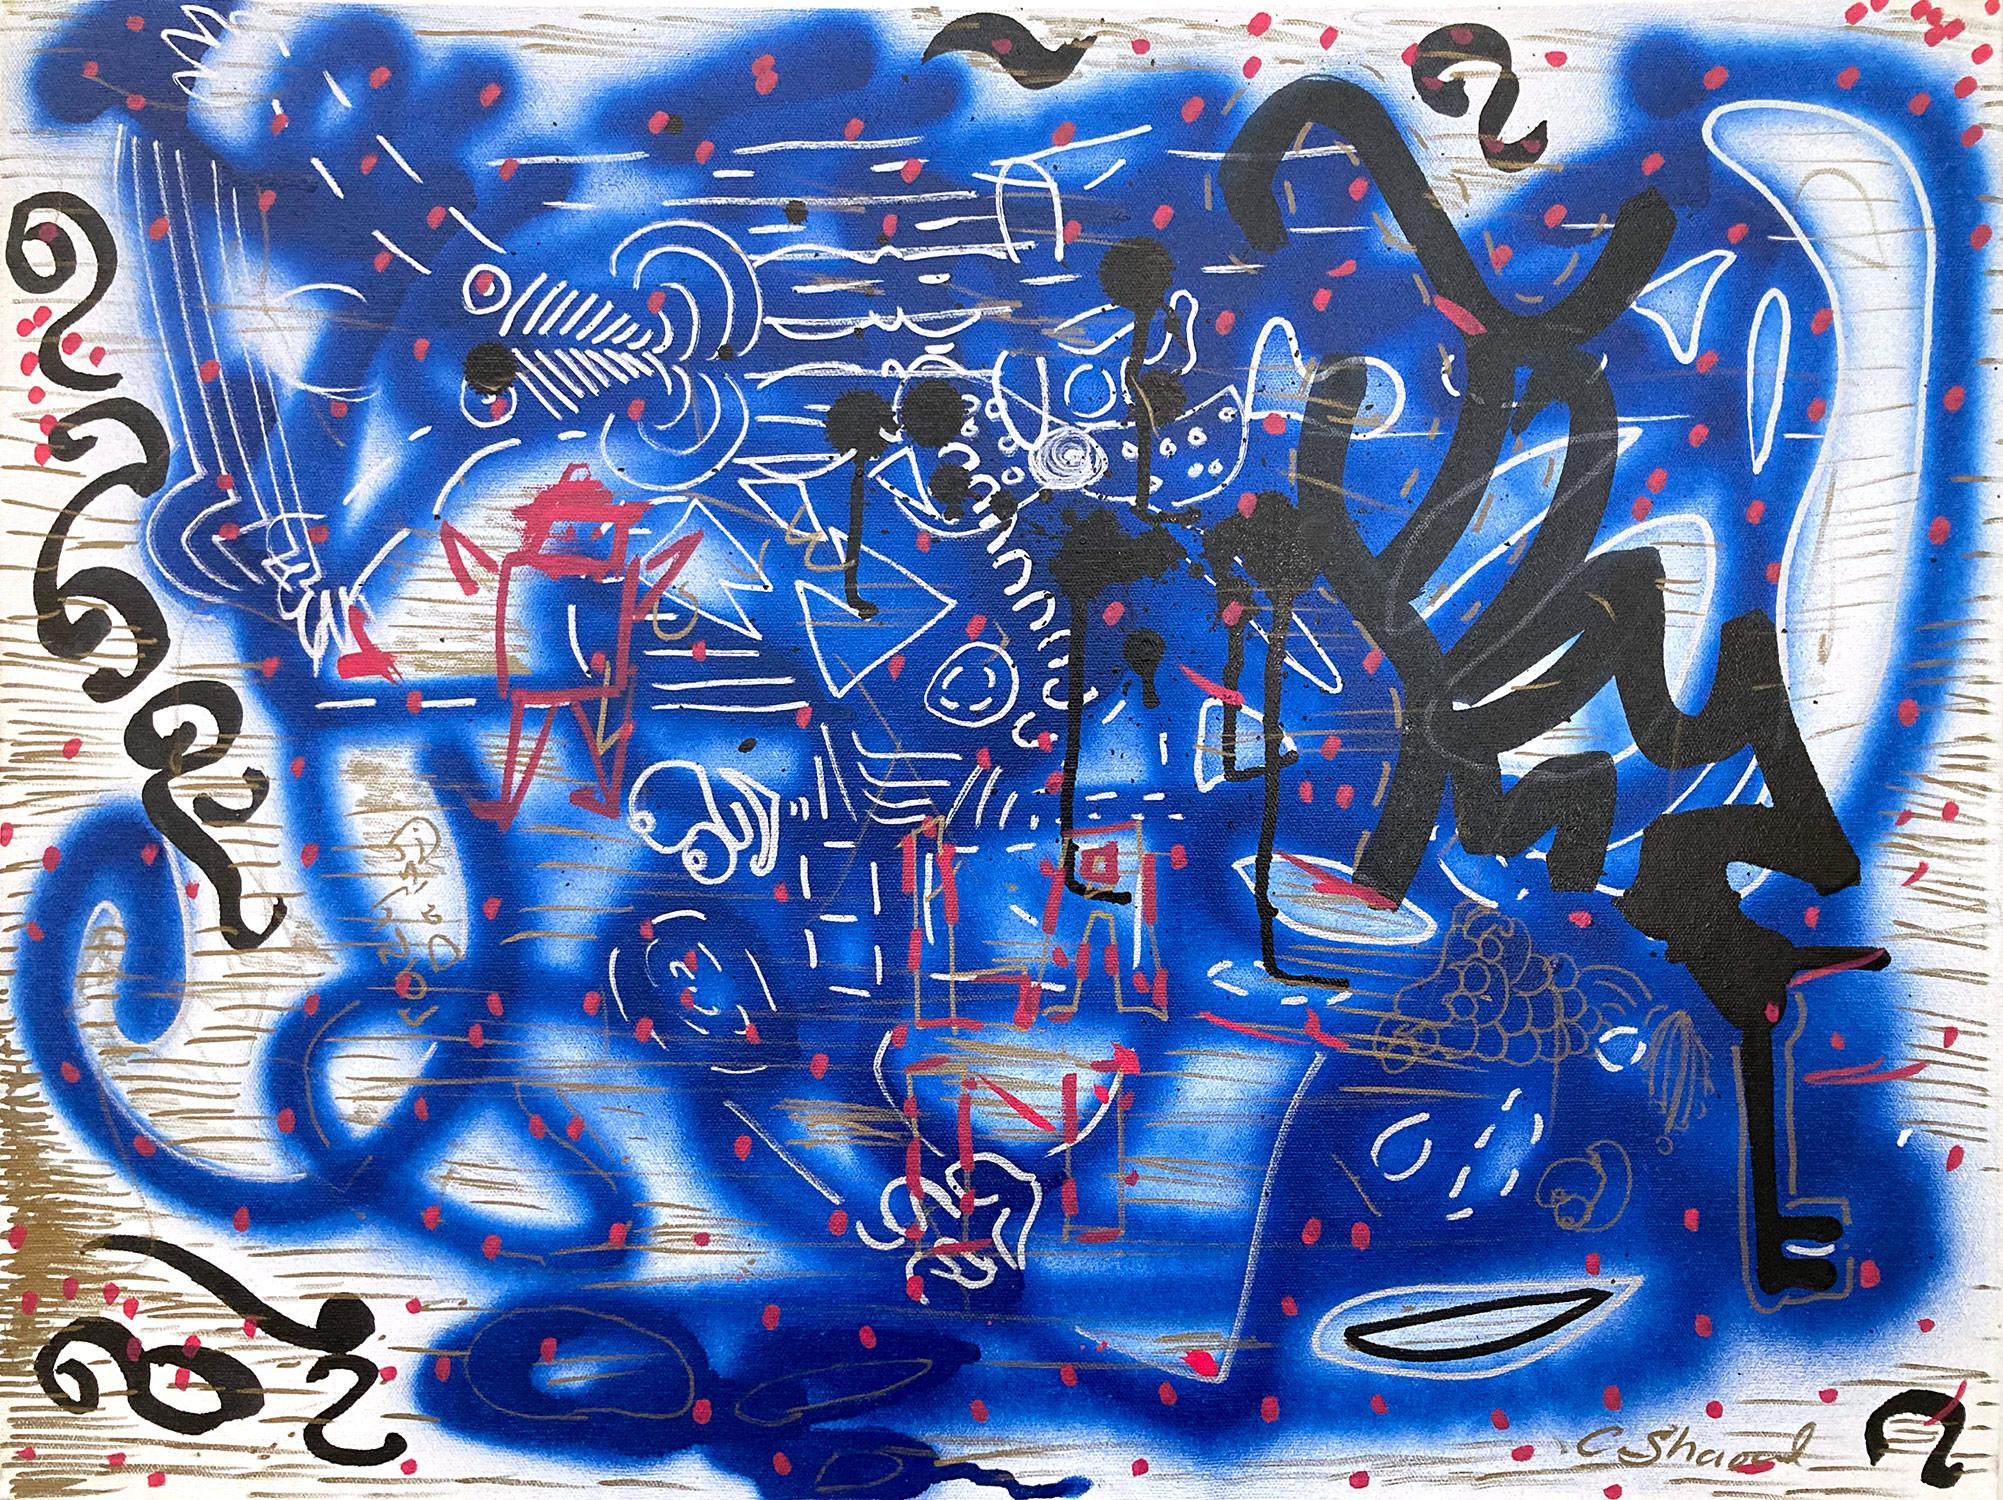 « Music Box » décorée de graffitis sur toile, peinture acrylique et encre sur toile